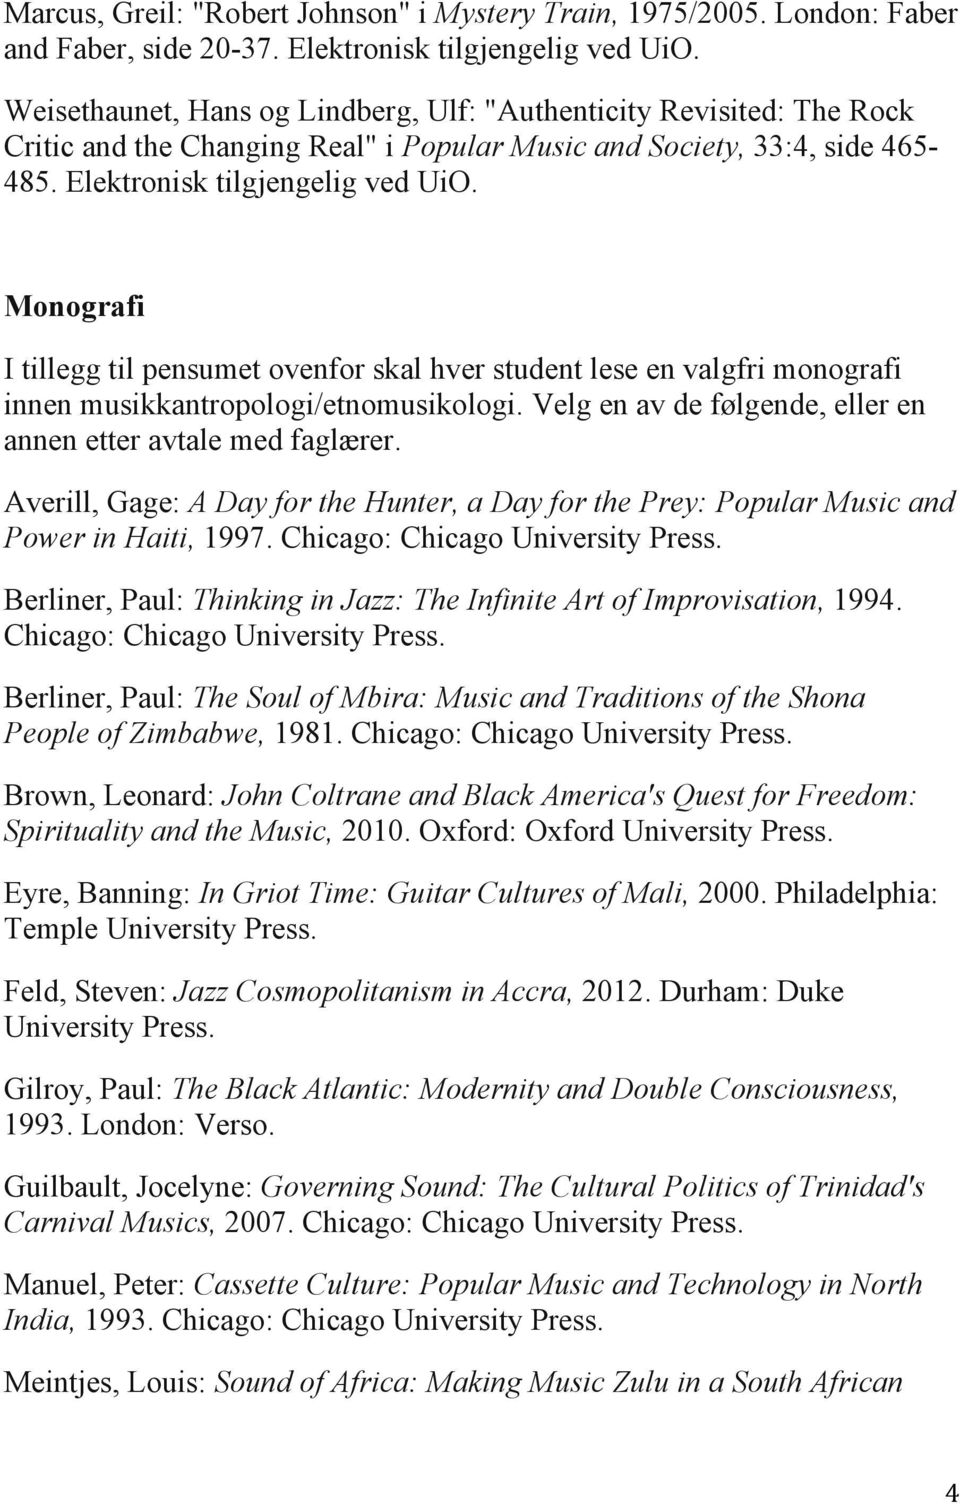 Elektronisk Monografi I tillegg til pensumet ovenfor skal hver student lese en valgfri monografi innen musikkantropologi/etnomusikologi.